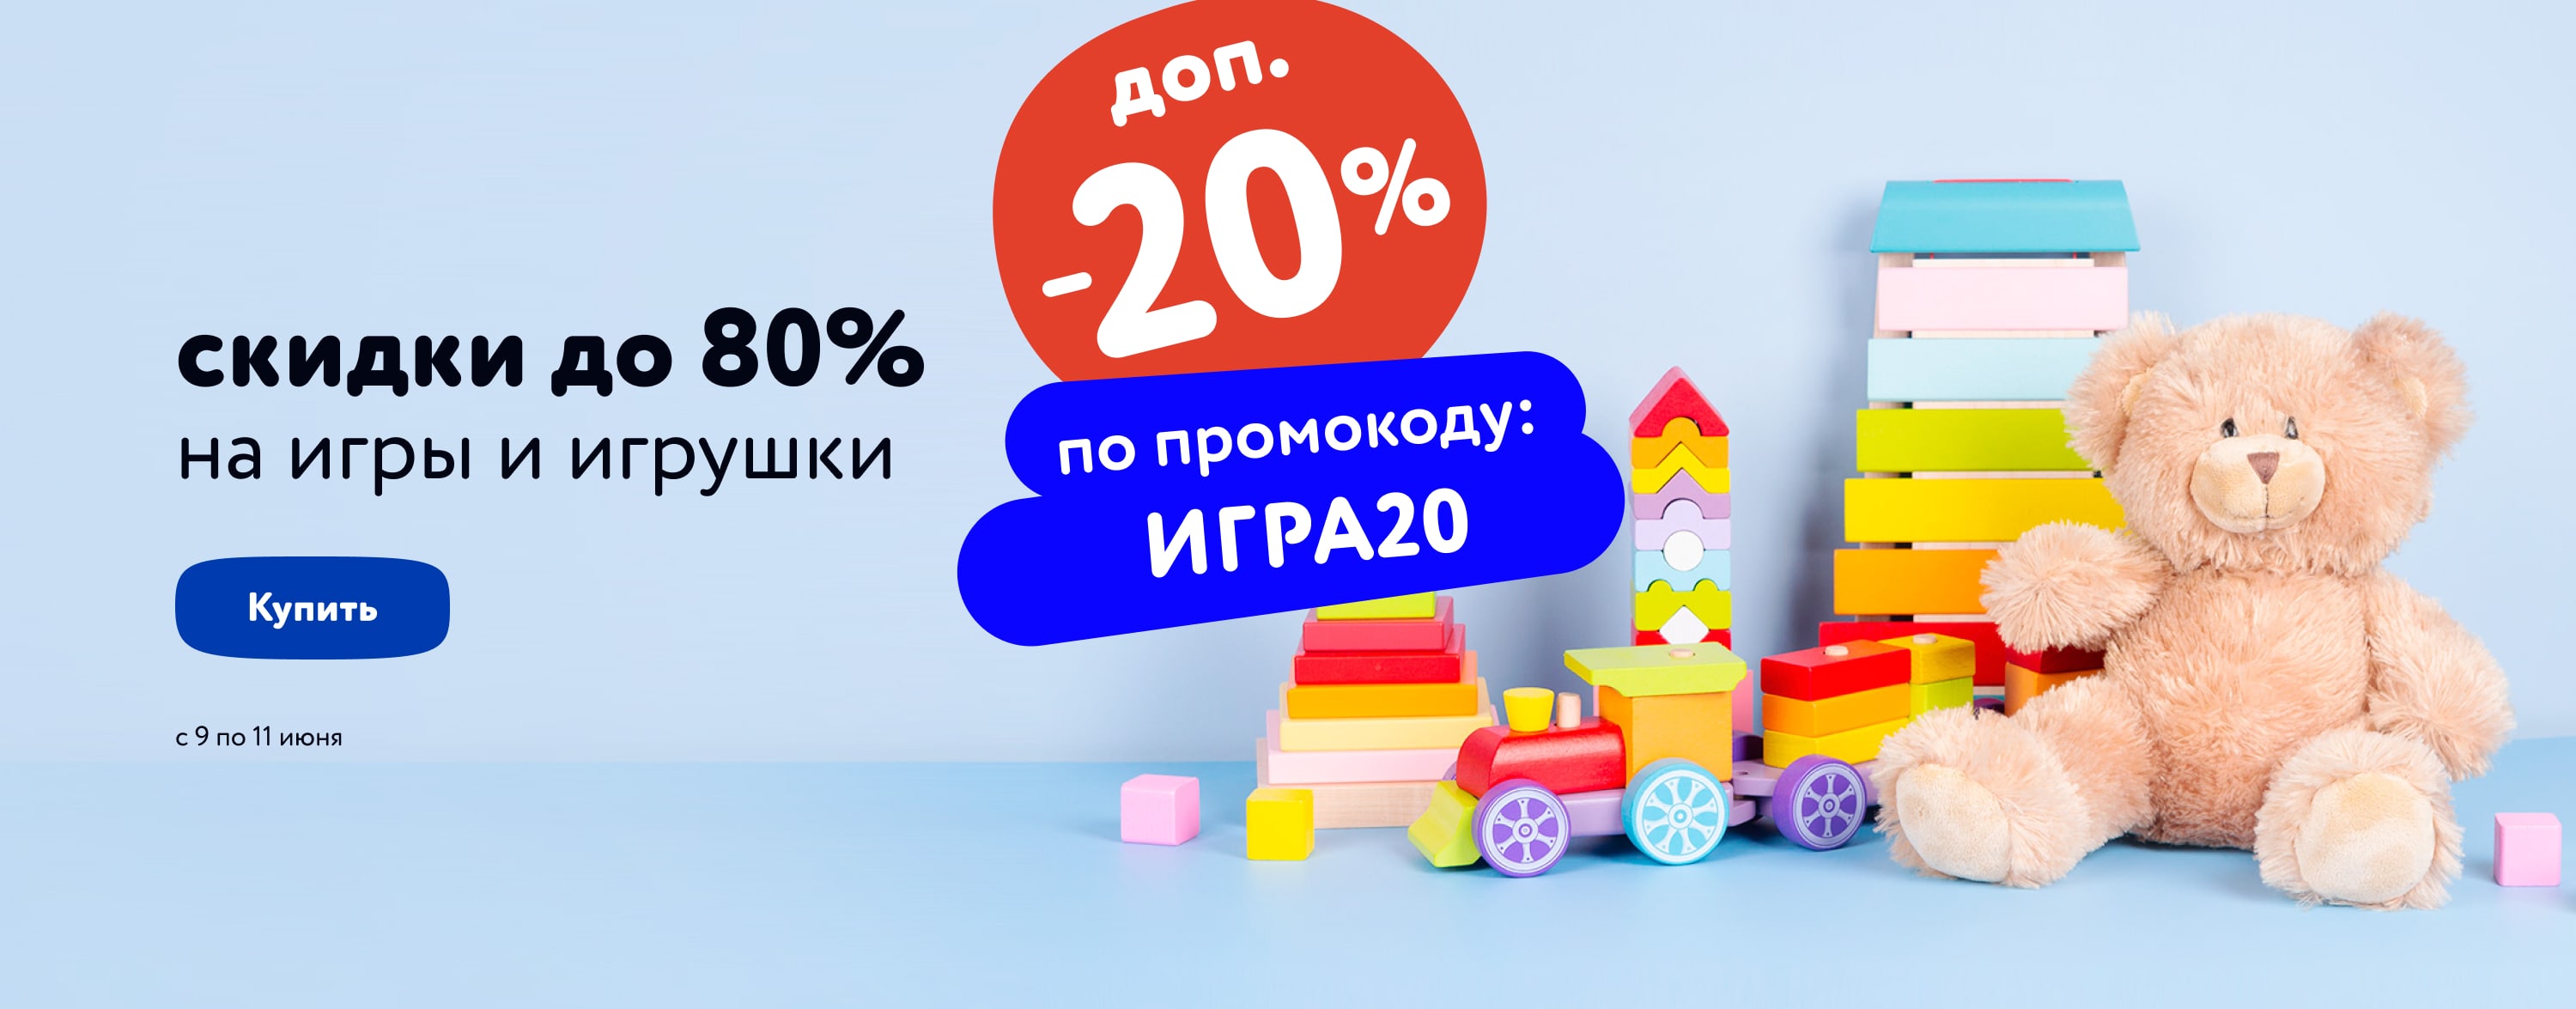 Доп. скидка 20% по промокоду на игрушки и игры (категории/ИГРА20/9-11.06/МП)